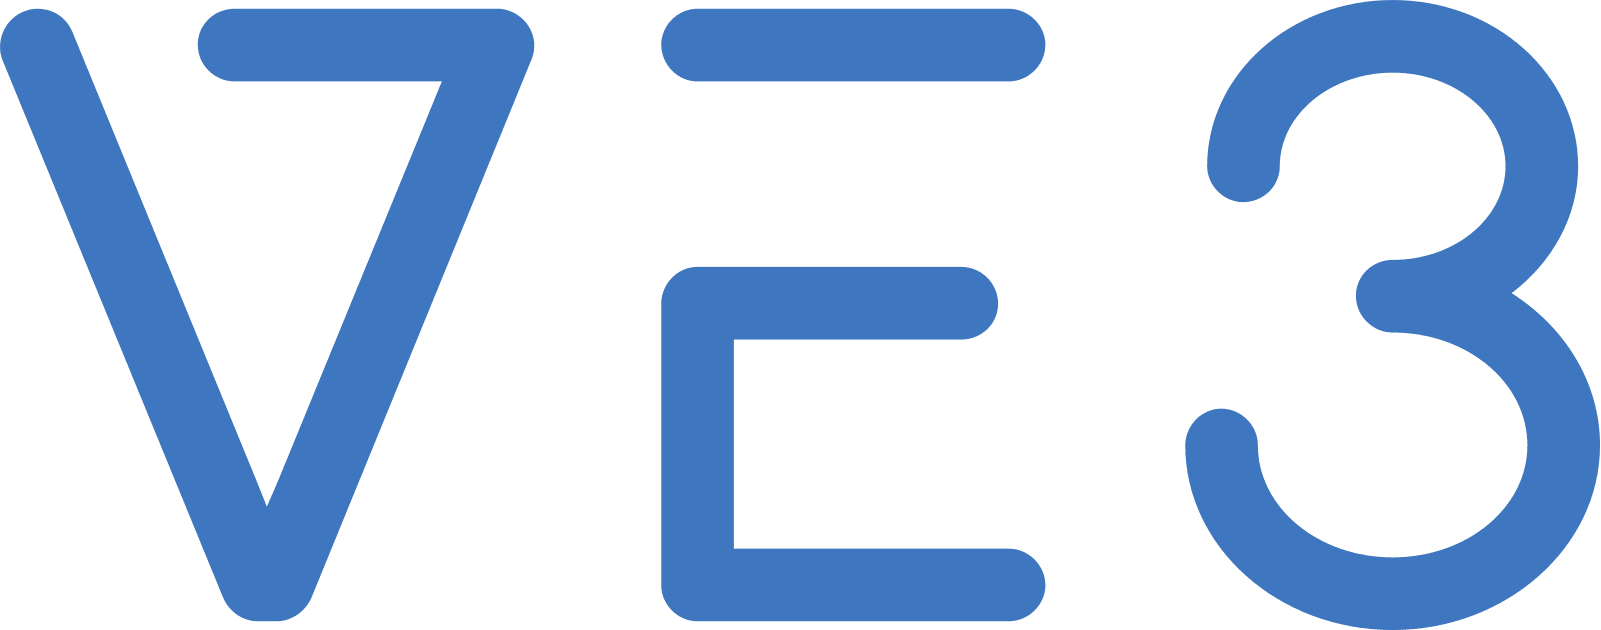 VE3-logo